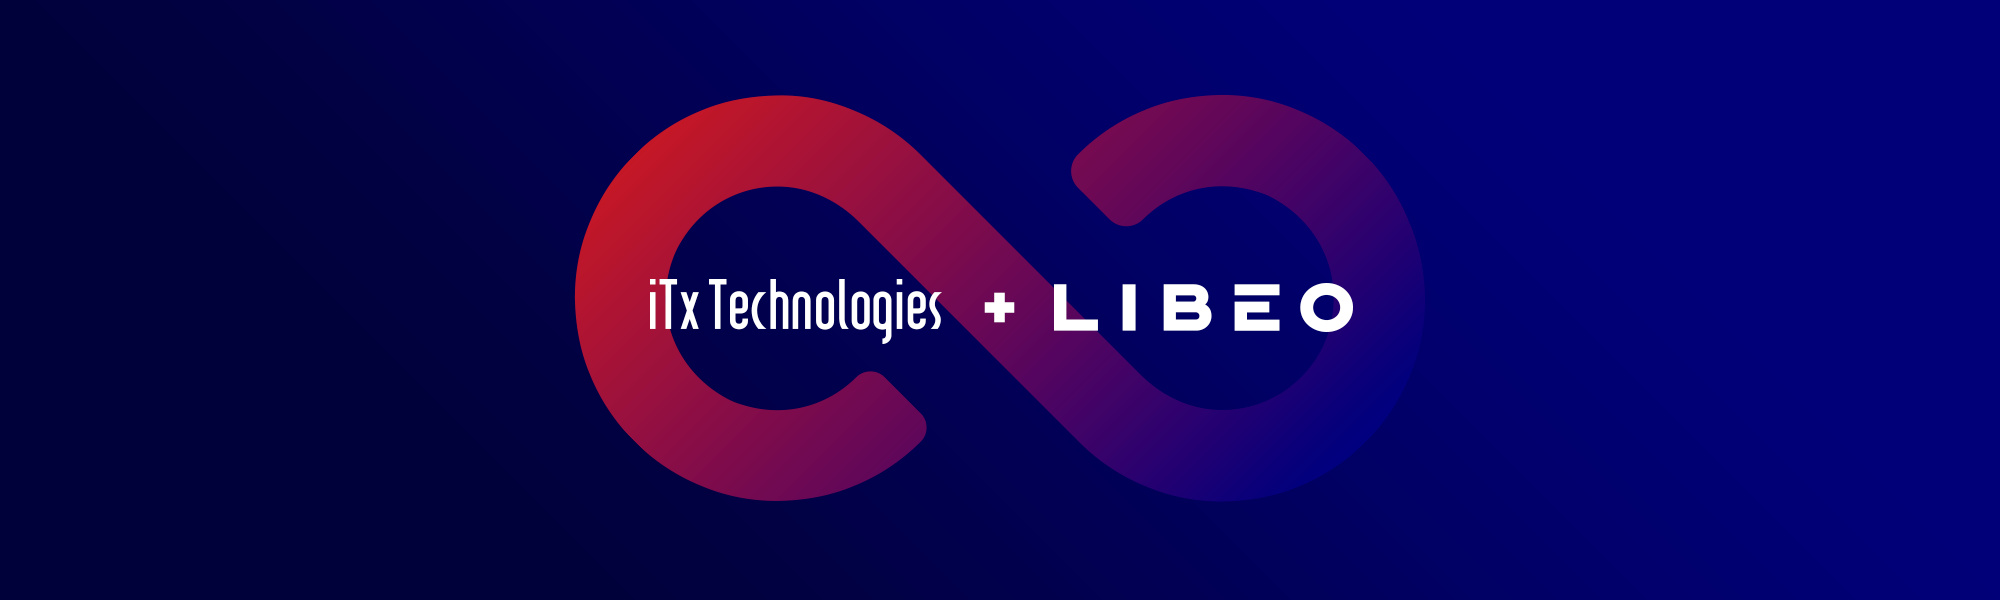 Les logos de Libéo et de ITx Technologies